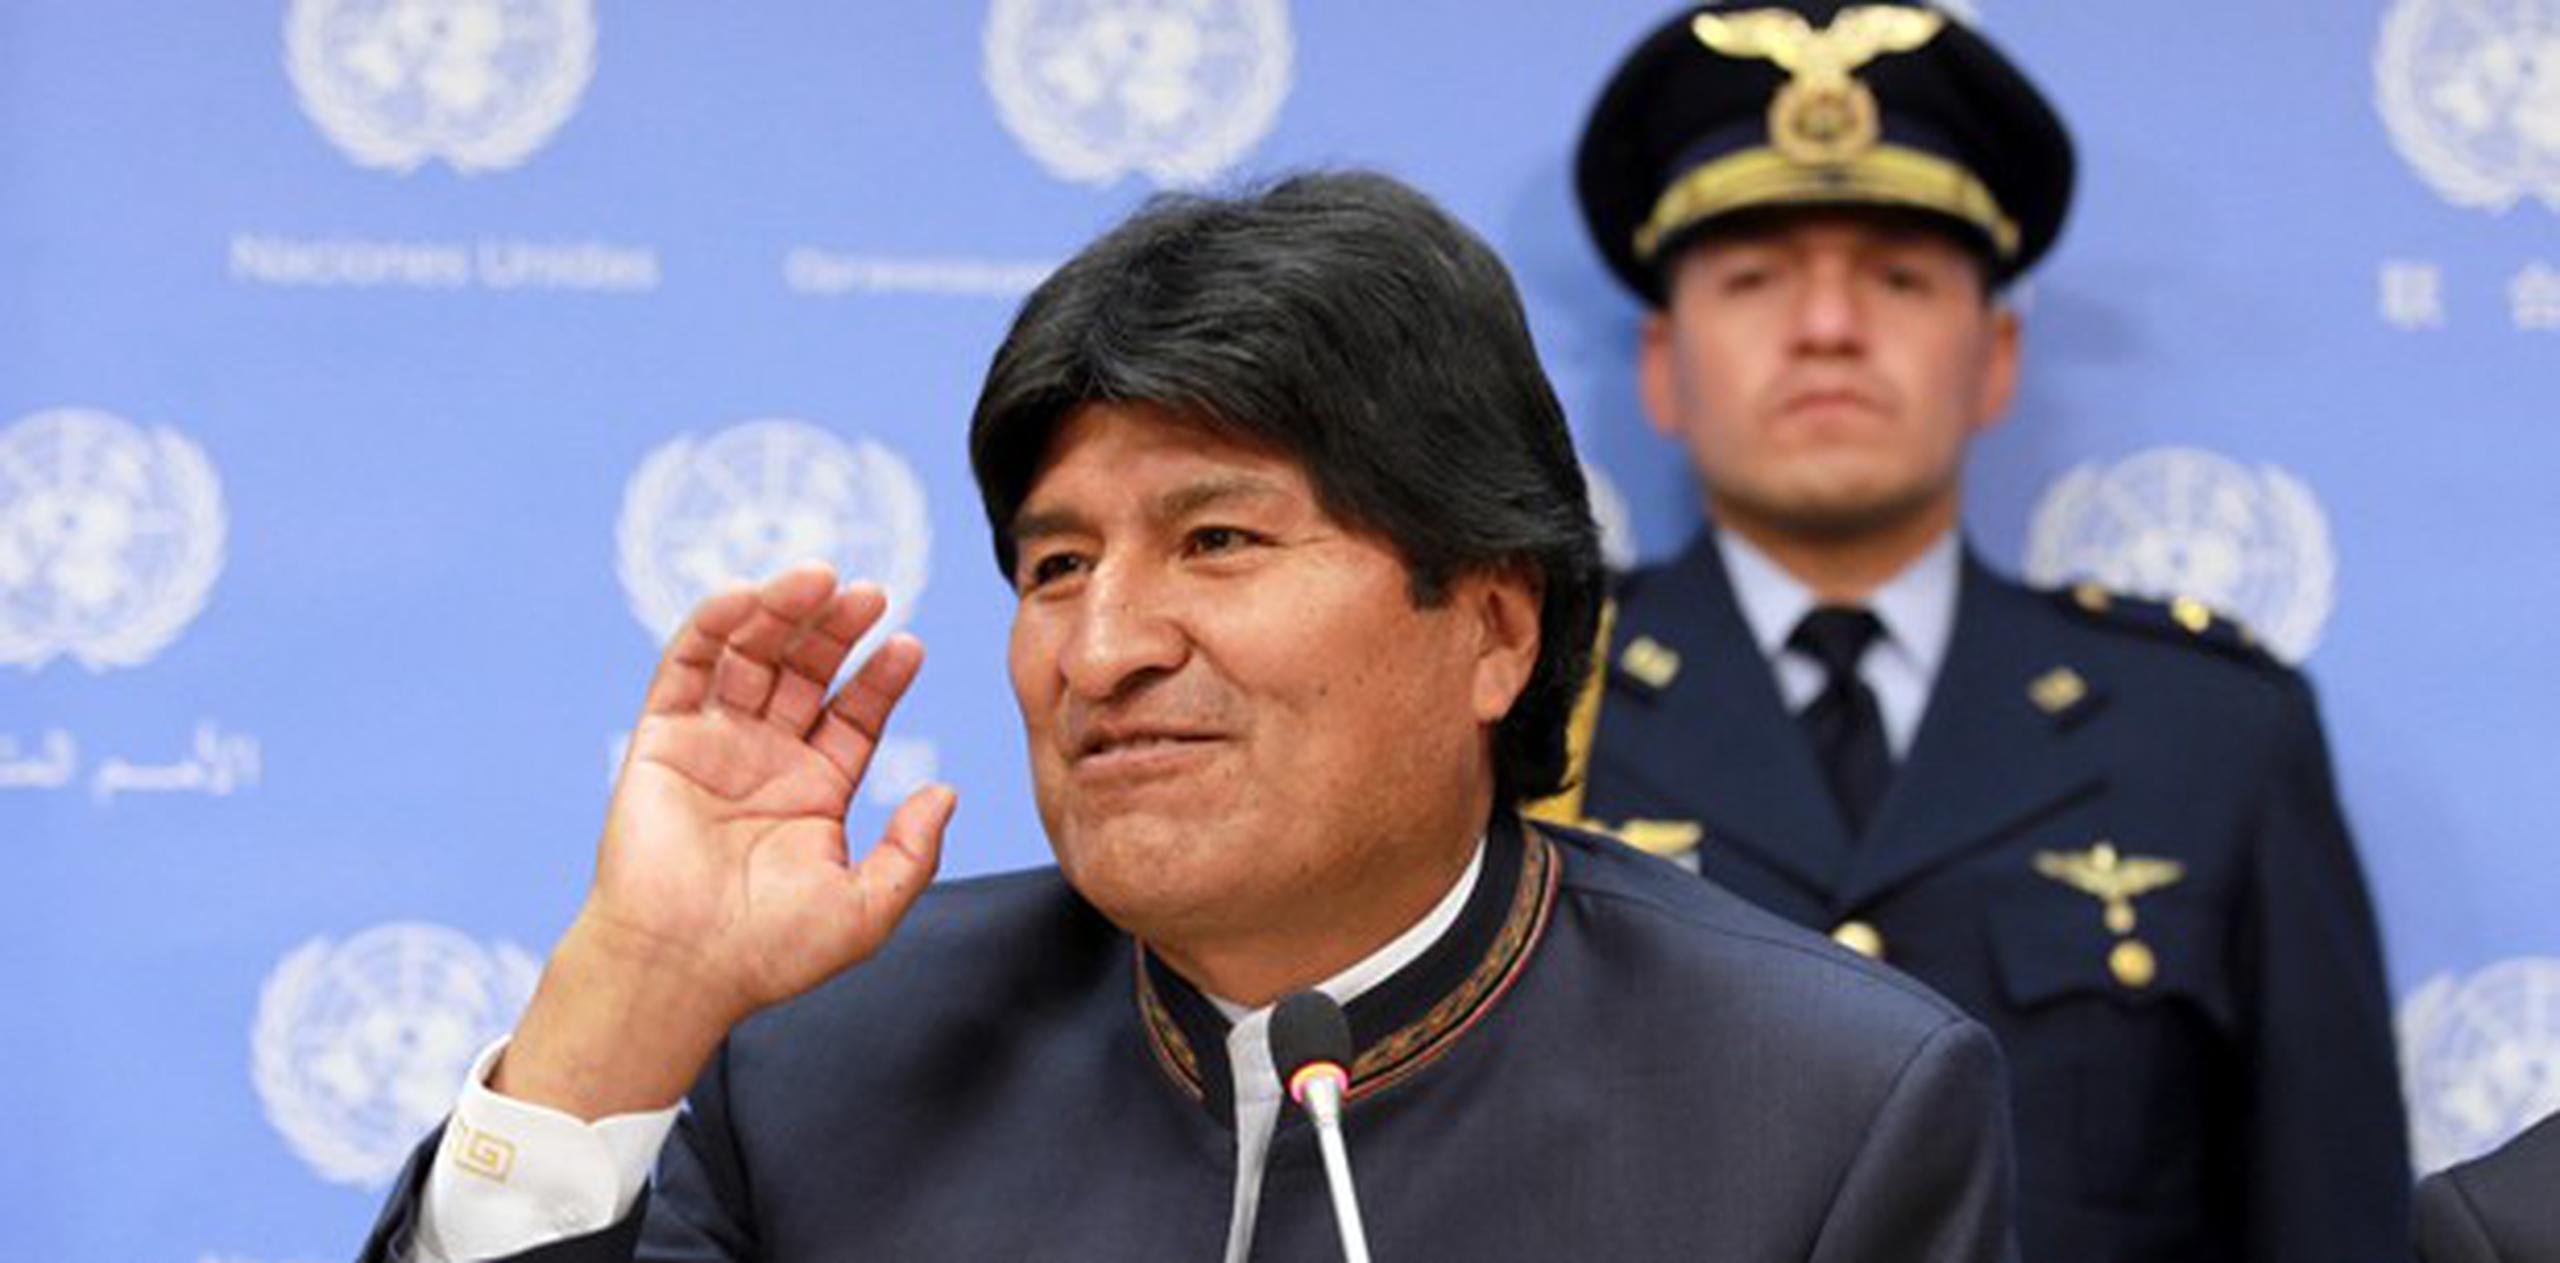 Morales lamentó que la comunidad internacional no haya "pensado seriamente en cambiar la sede" de la ONU. (Archivo)